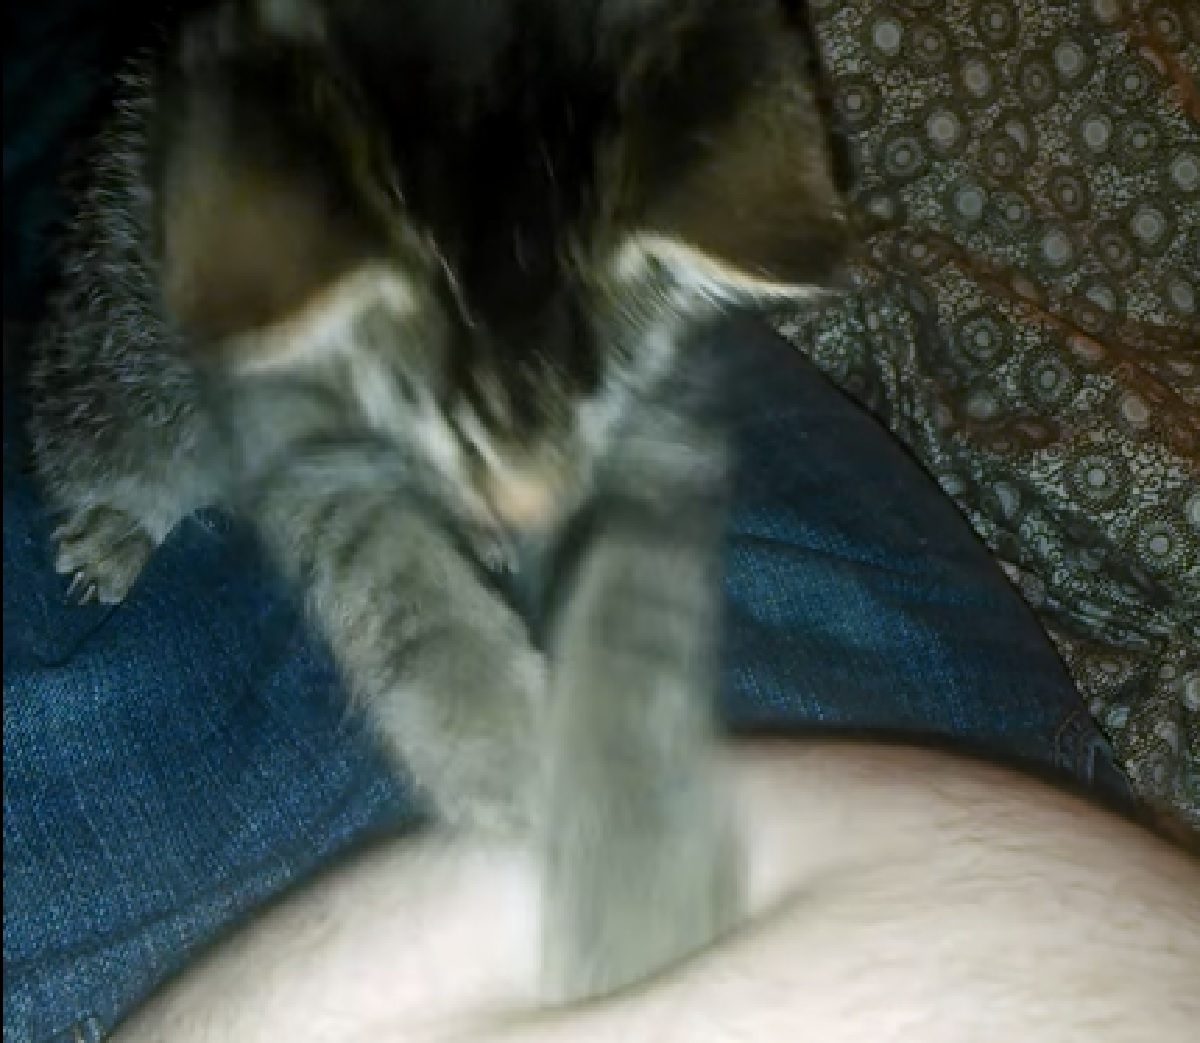 gattino attacca ombelico avversario